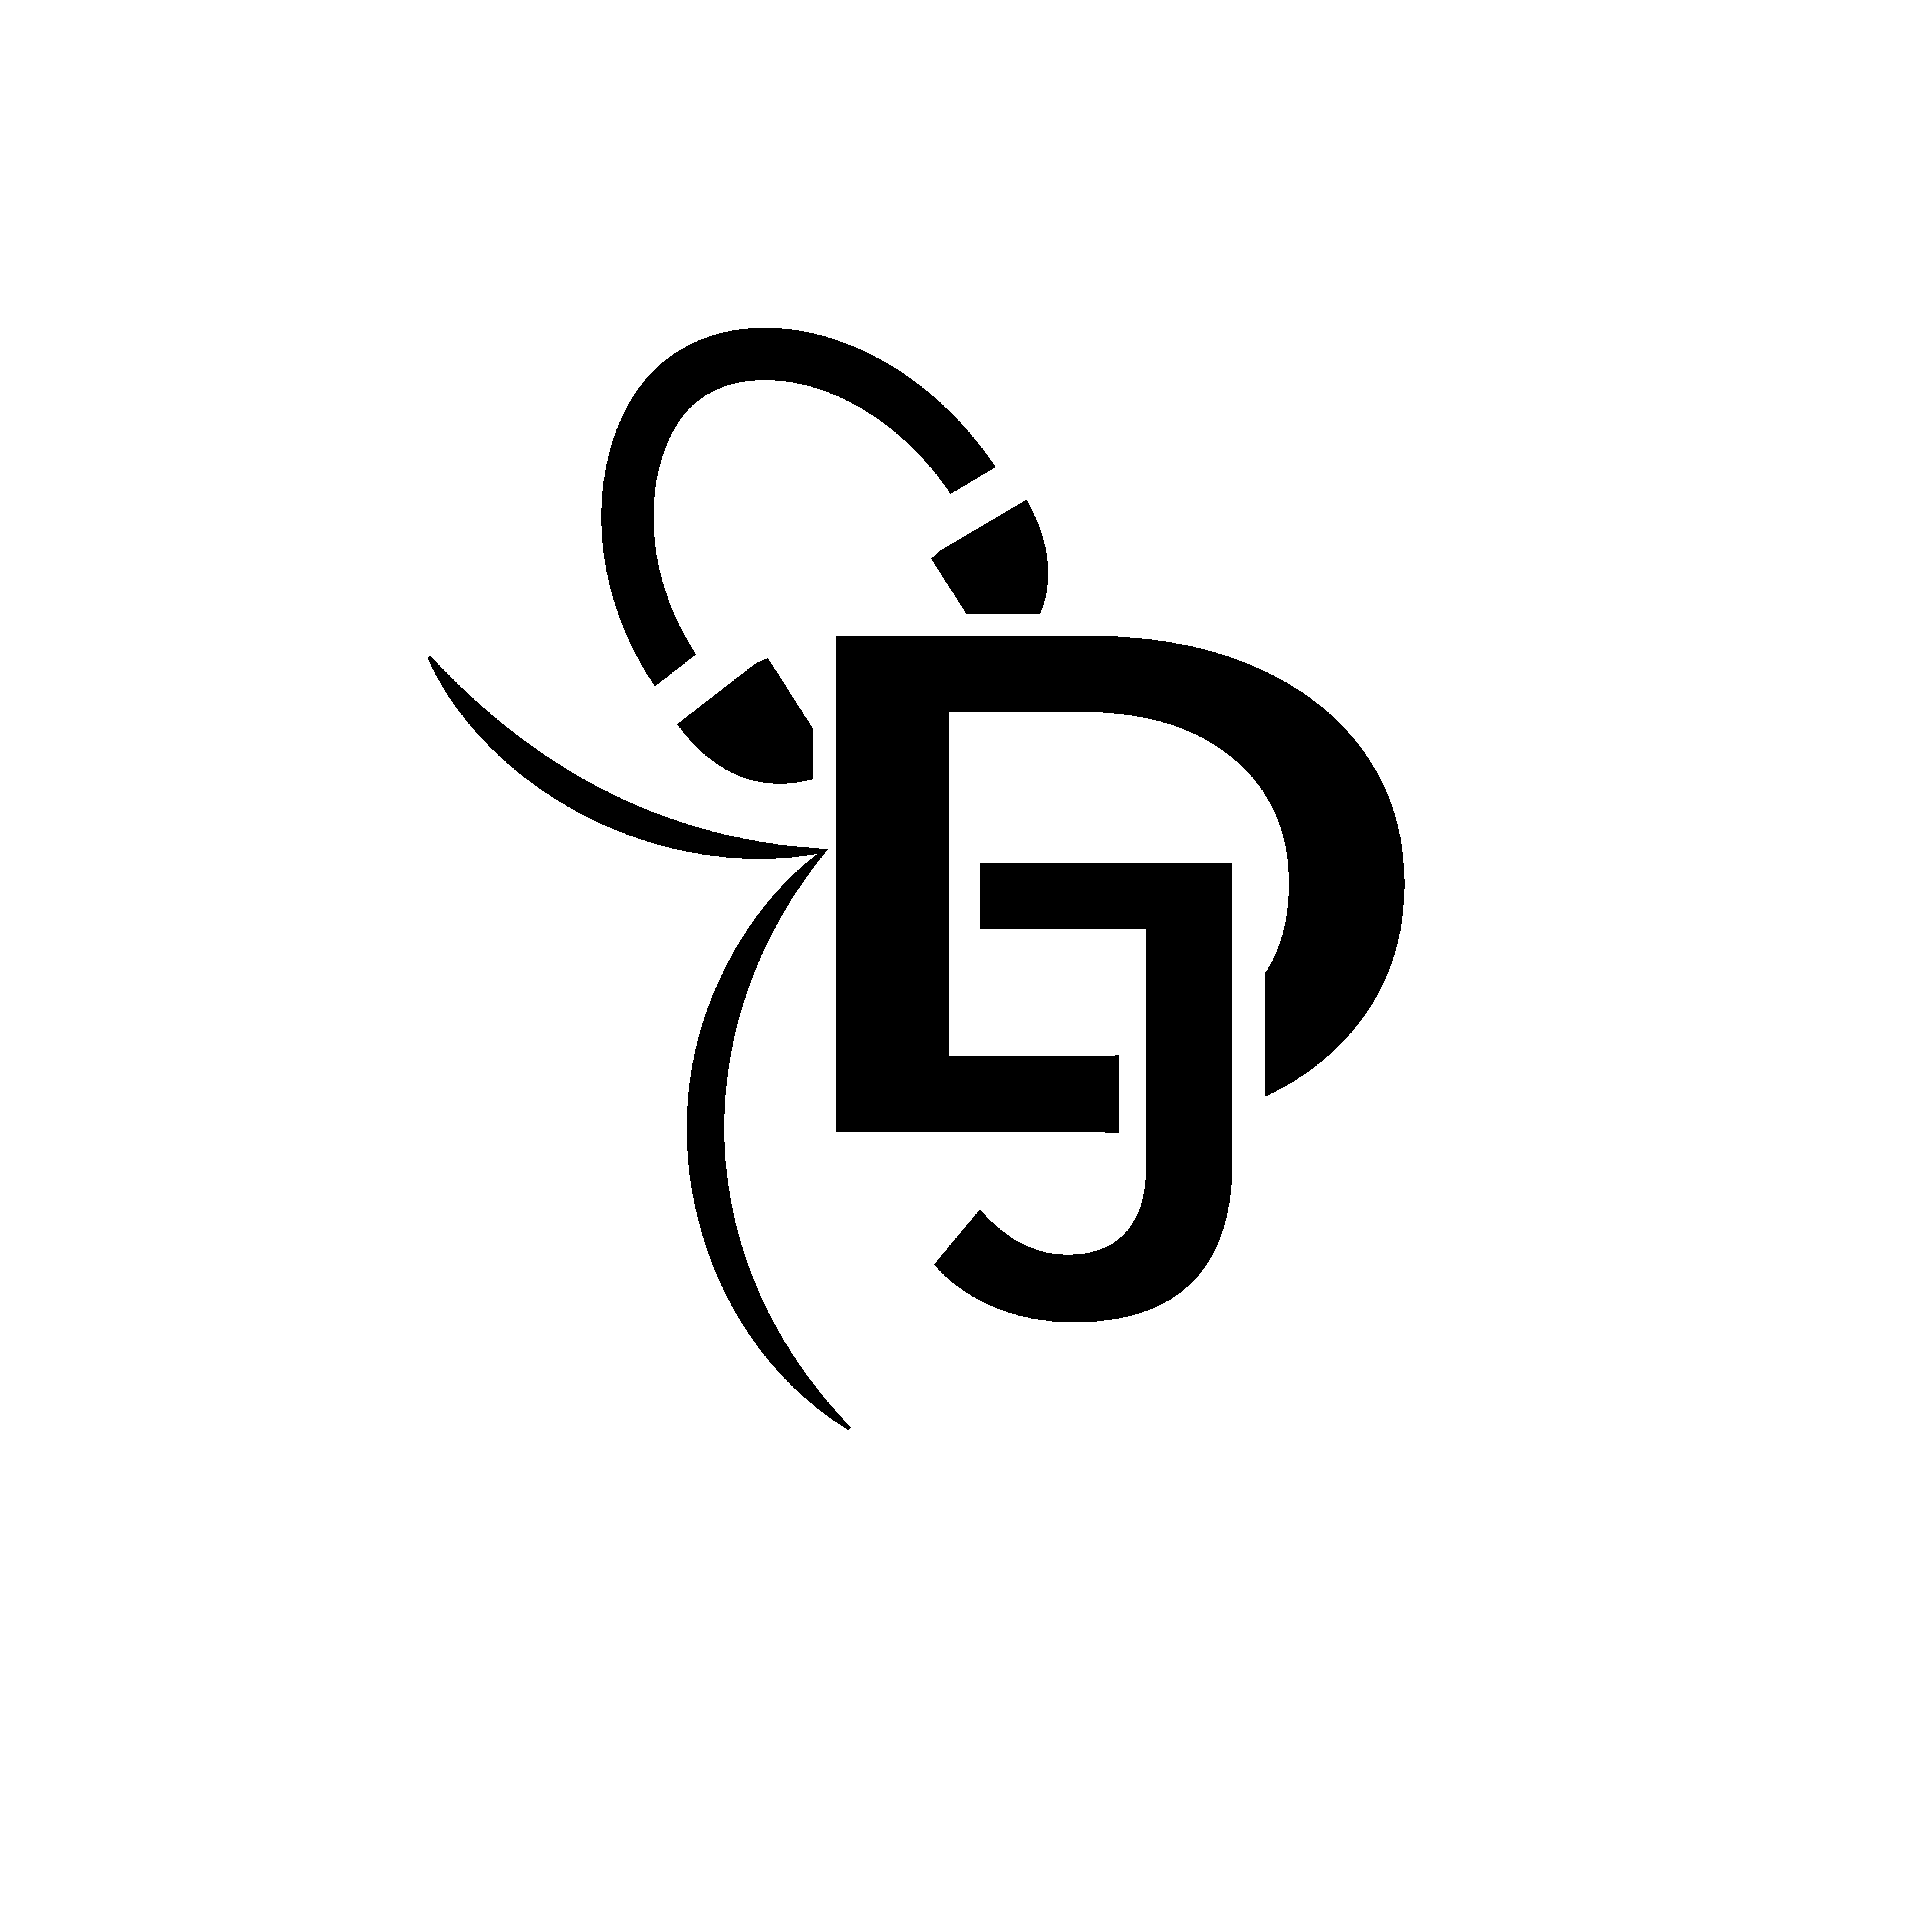 dj logo png